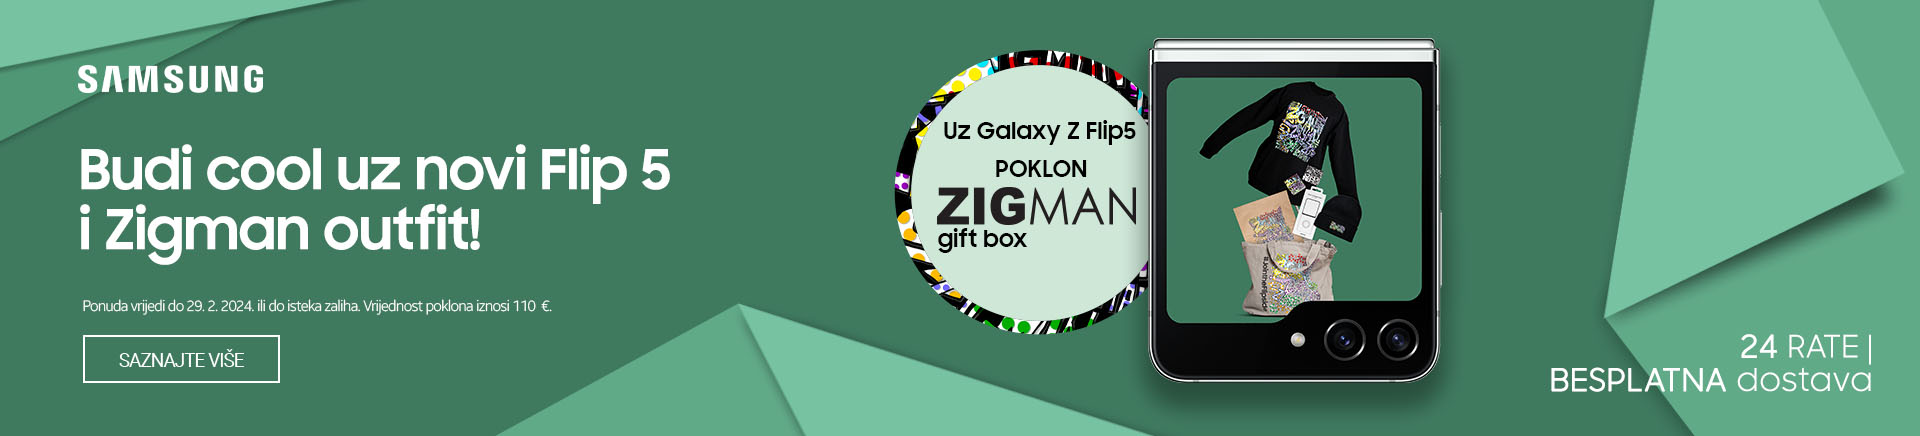 HR~Samsung Galaxy Flip5 + Zigman MOBILE 380x436.jpg